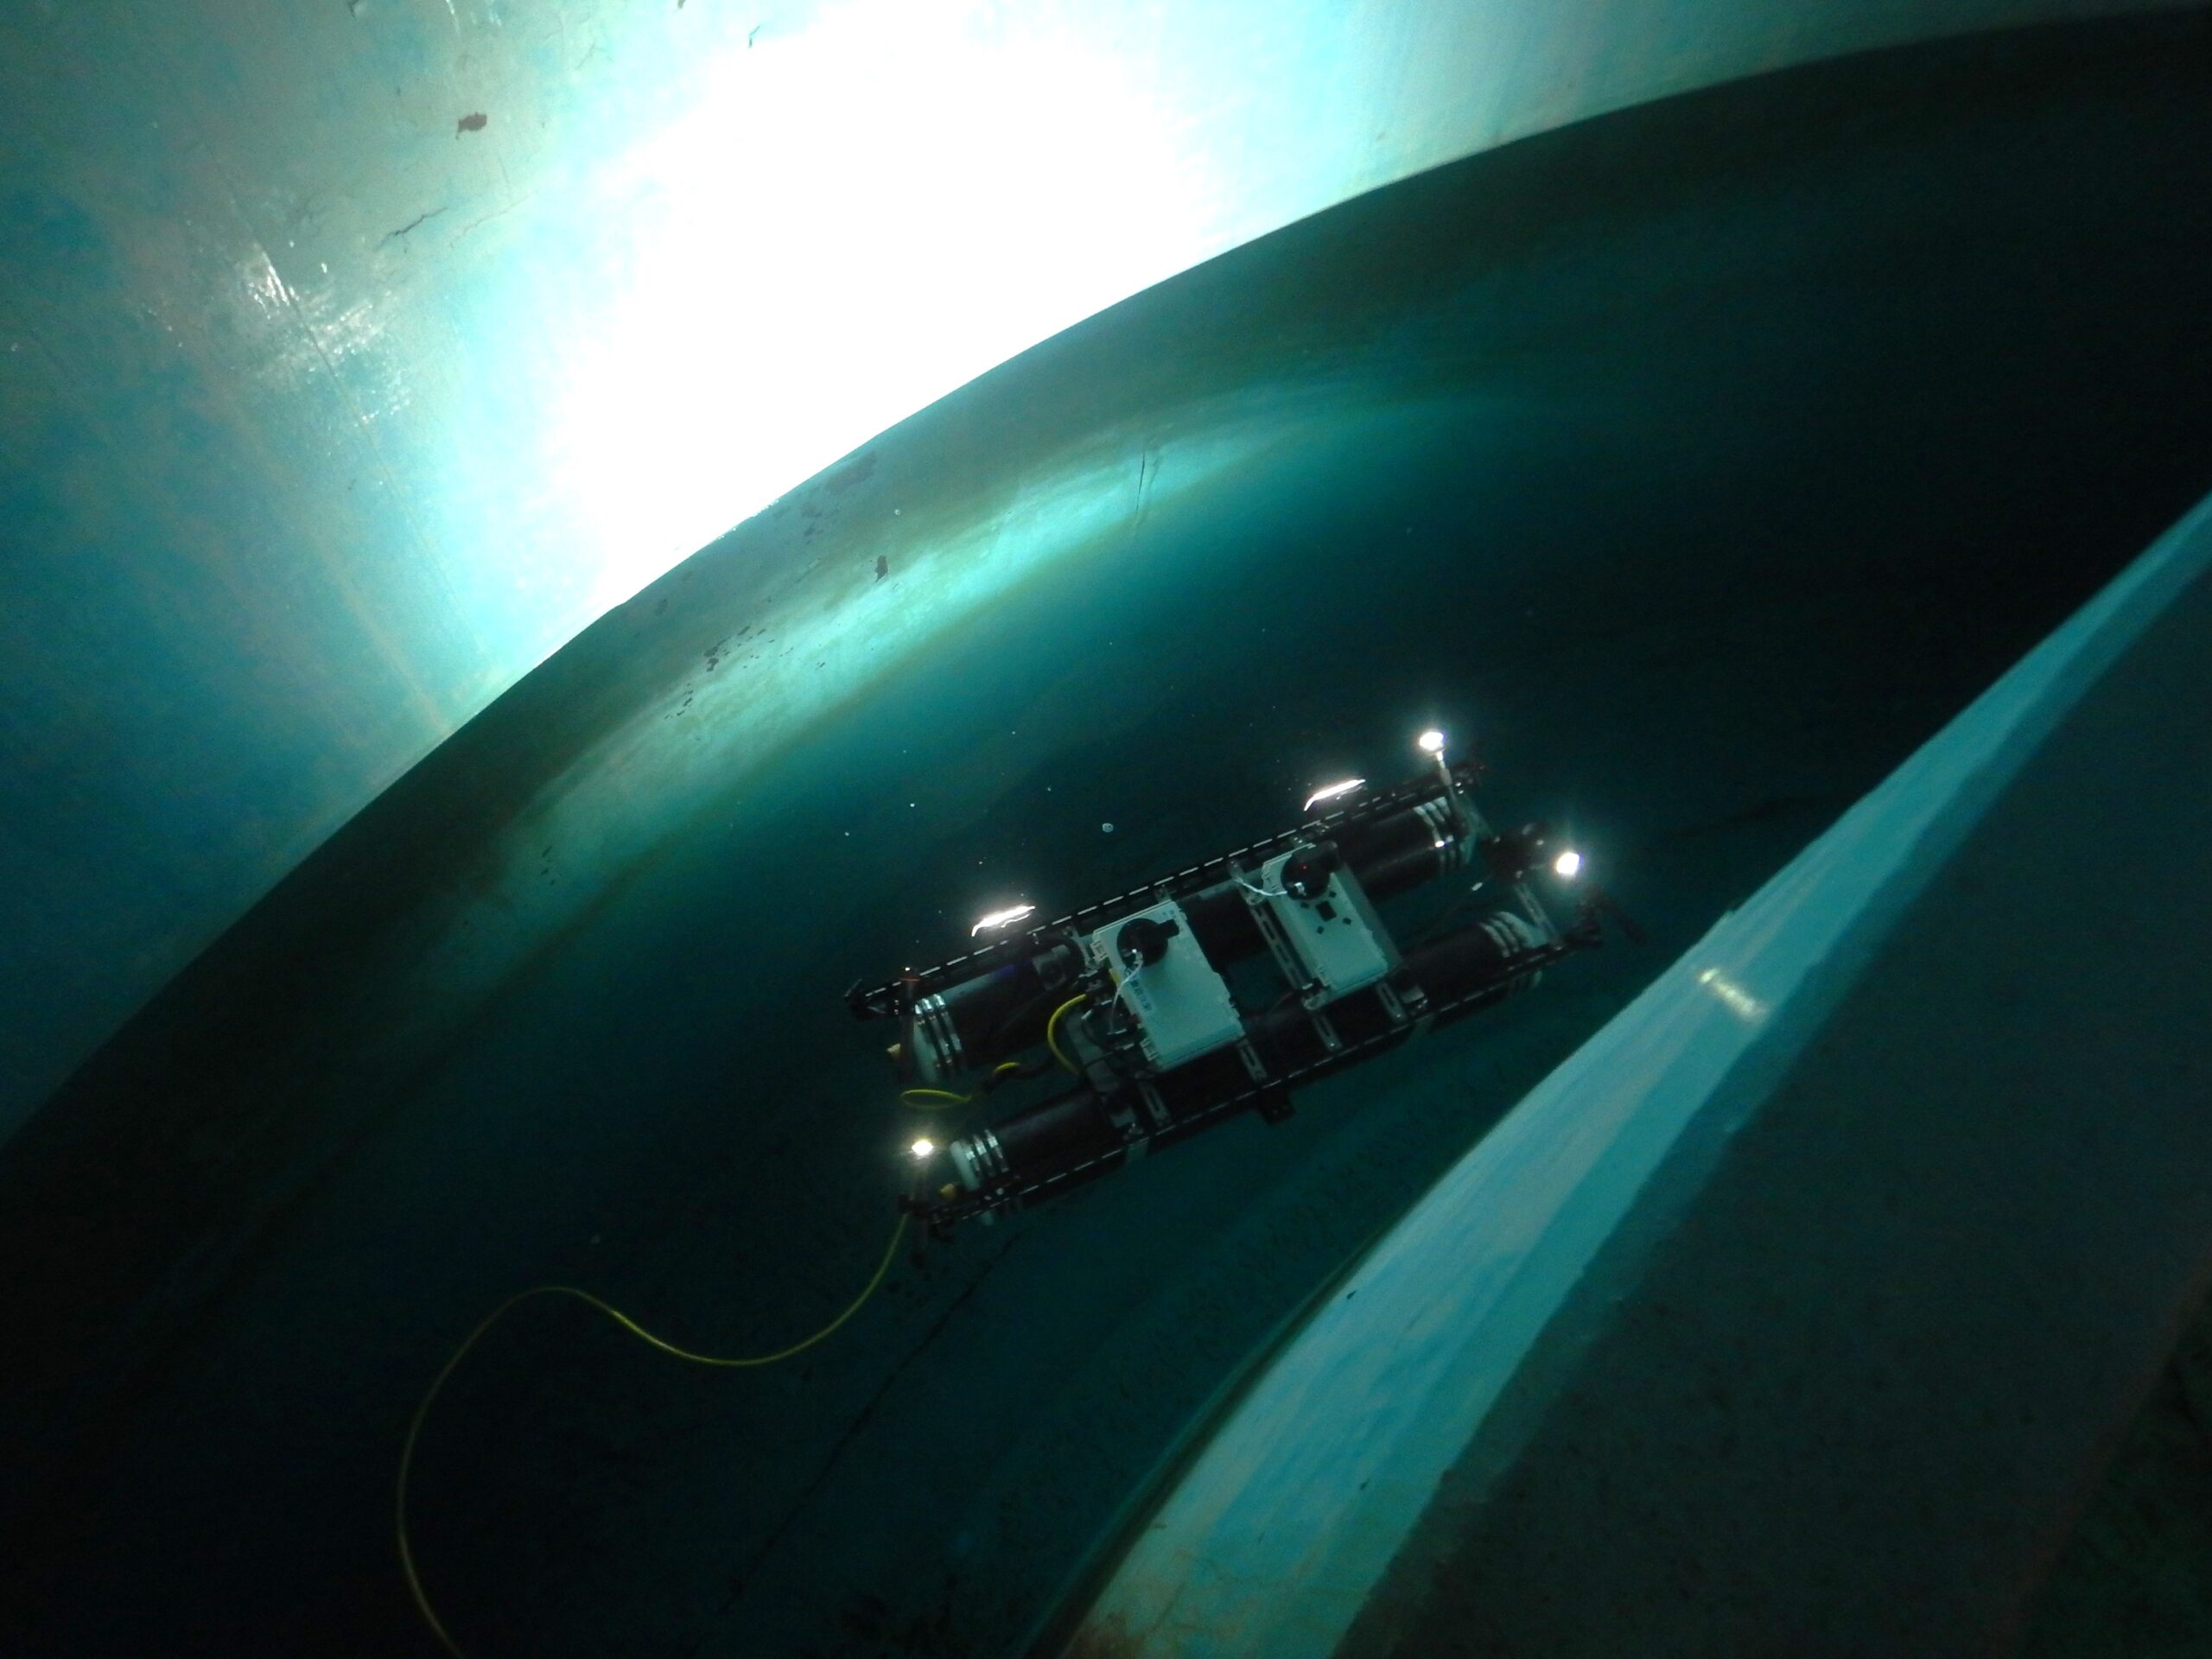 水上スライダーHy-CaT及び水中ドローンを用いた水道施設点検の実証実験及びその結果について